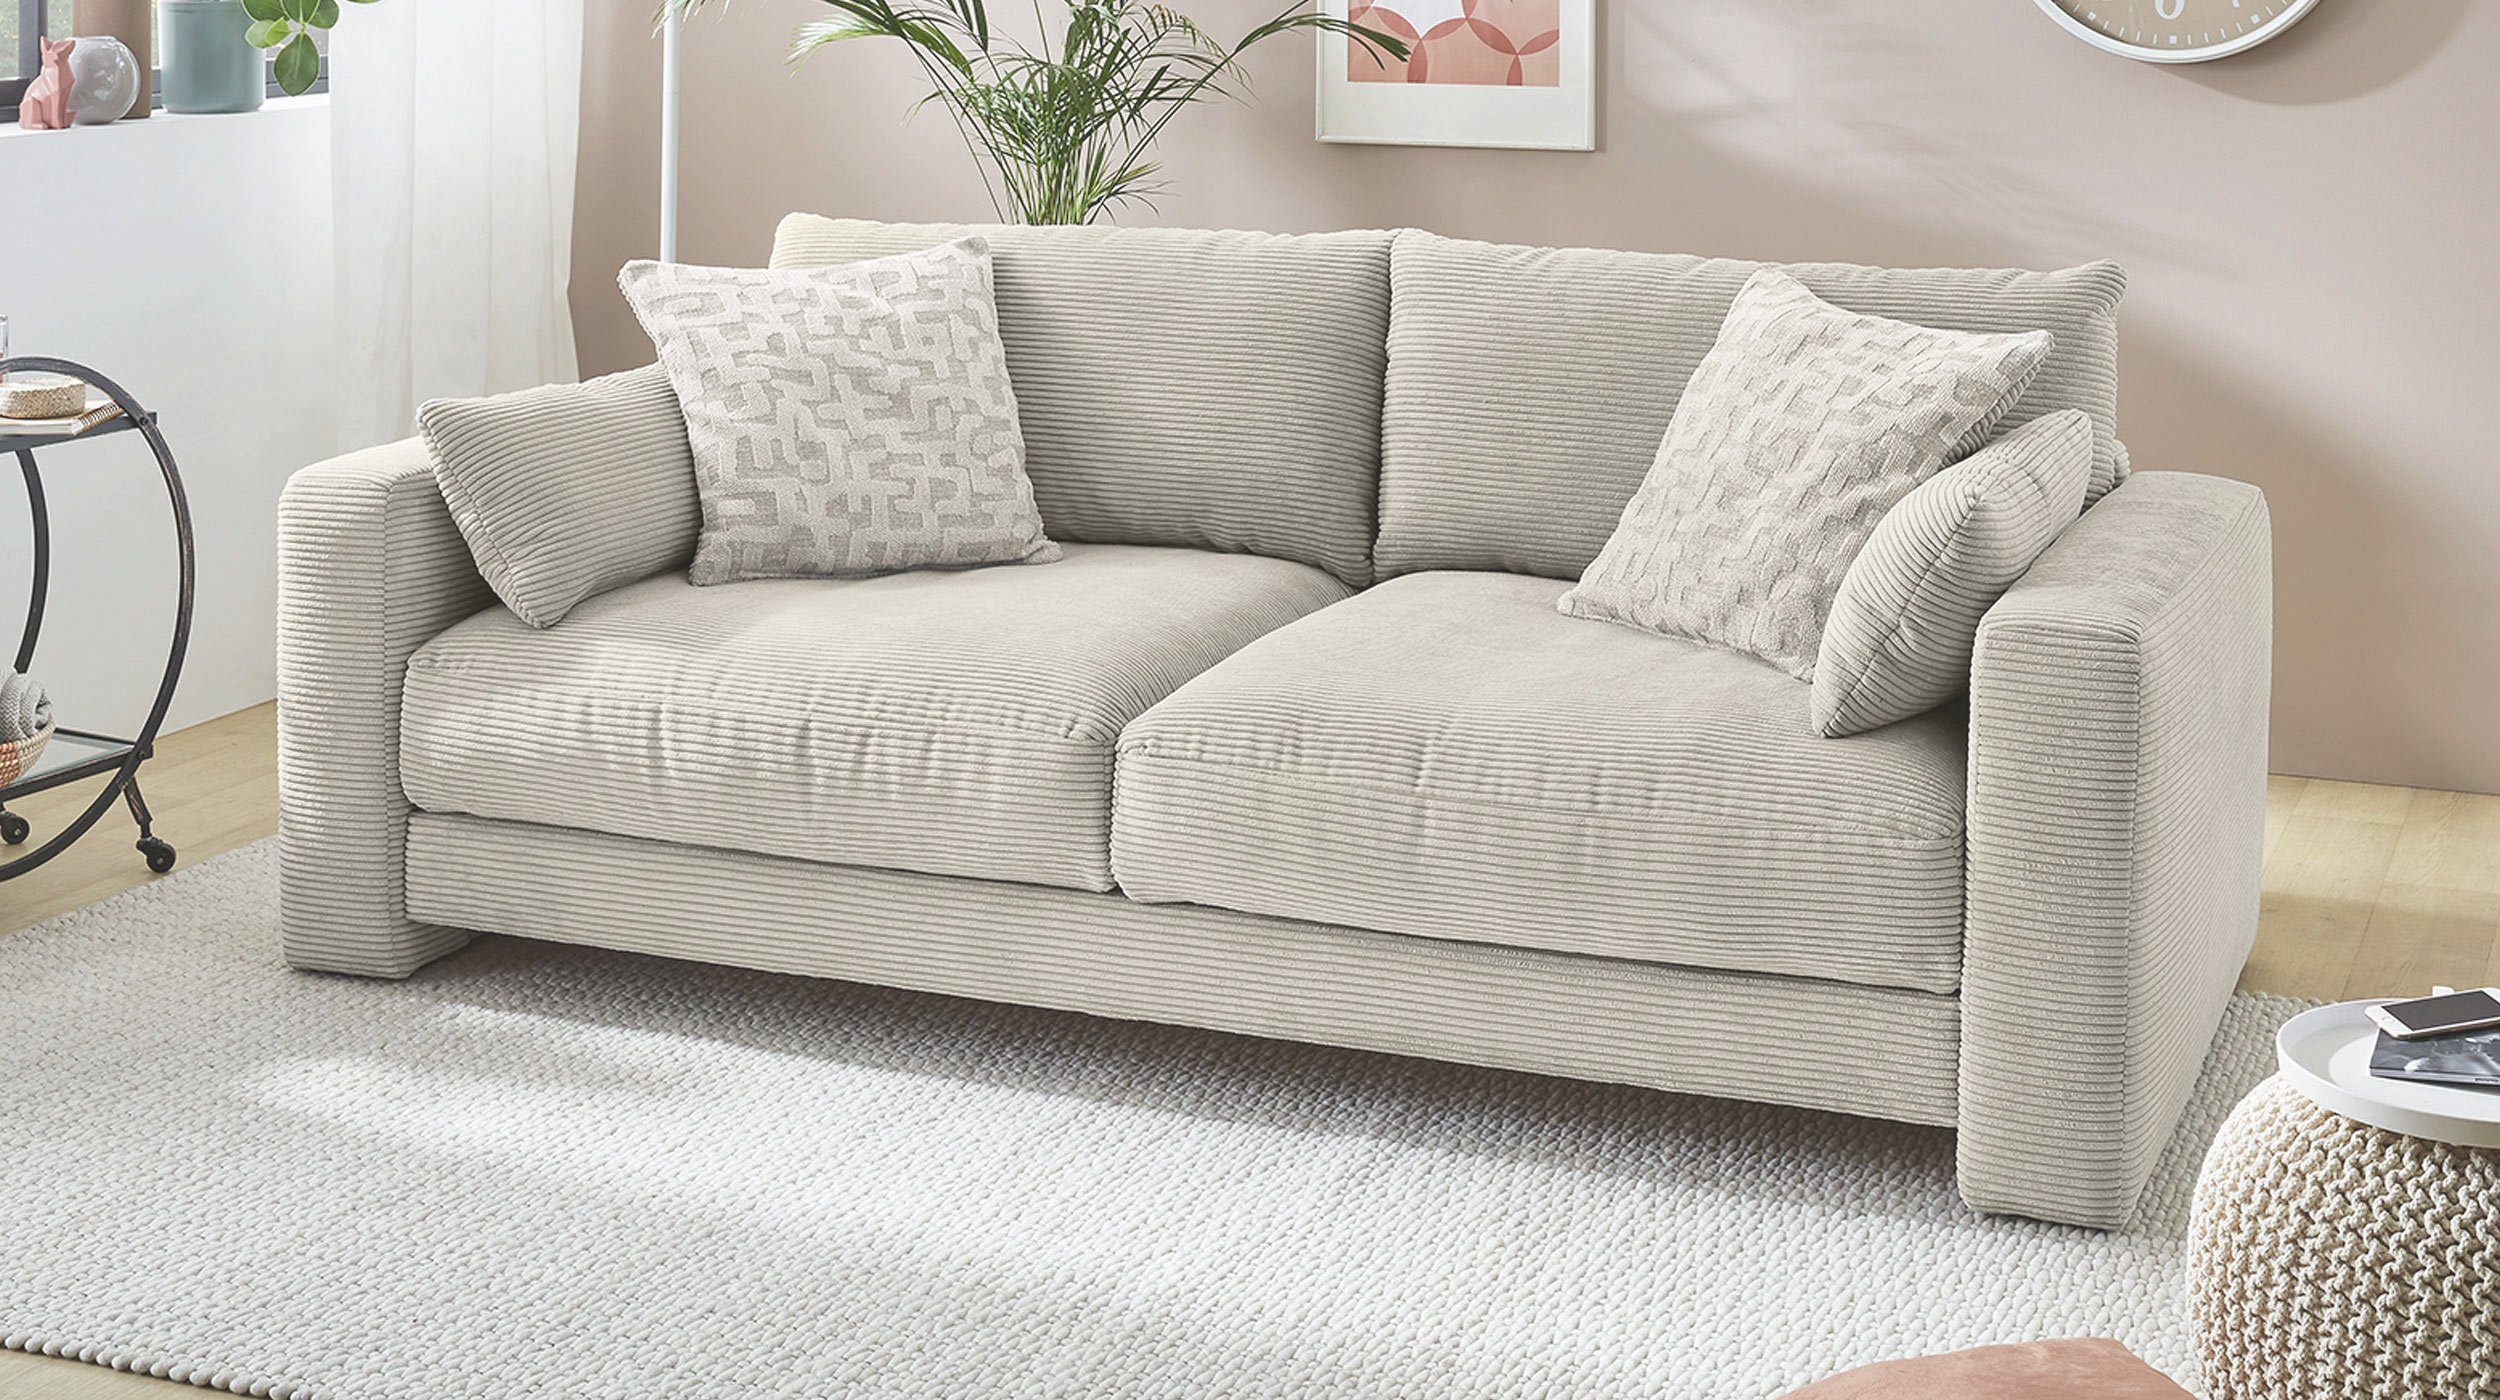 Massivart® Big-Sofa MILEY grau-beige Cordbezug 241 cm 4-Sitzer, Bonell-Federkernpolsterung, 2 Rückenkissen, 4 Zierkissen